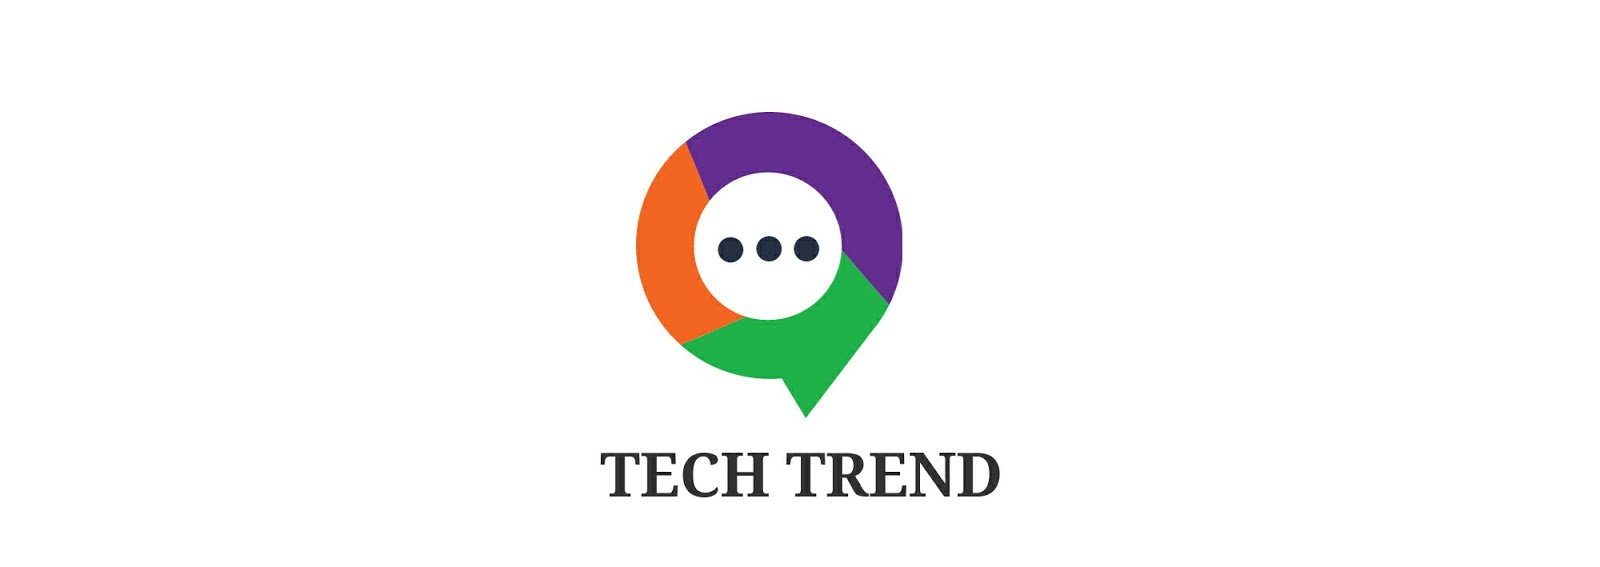 Tech Trend